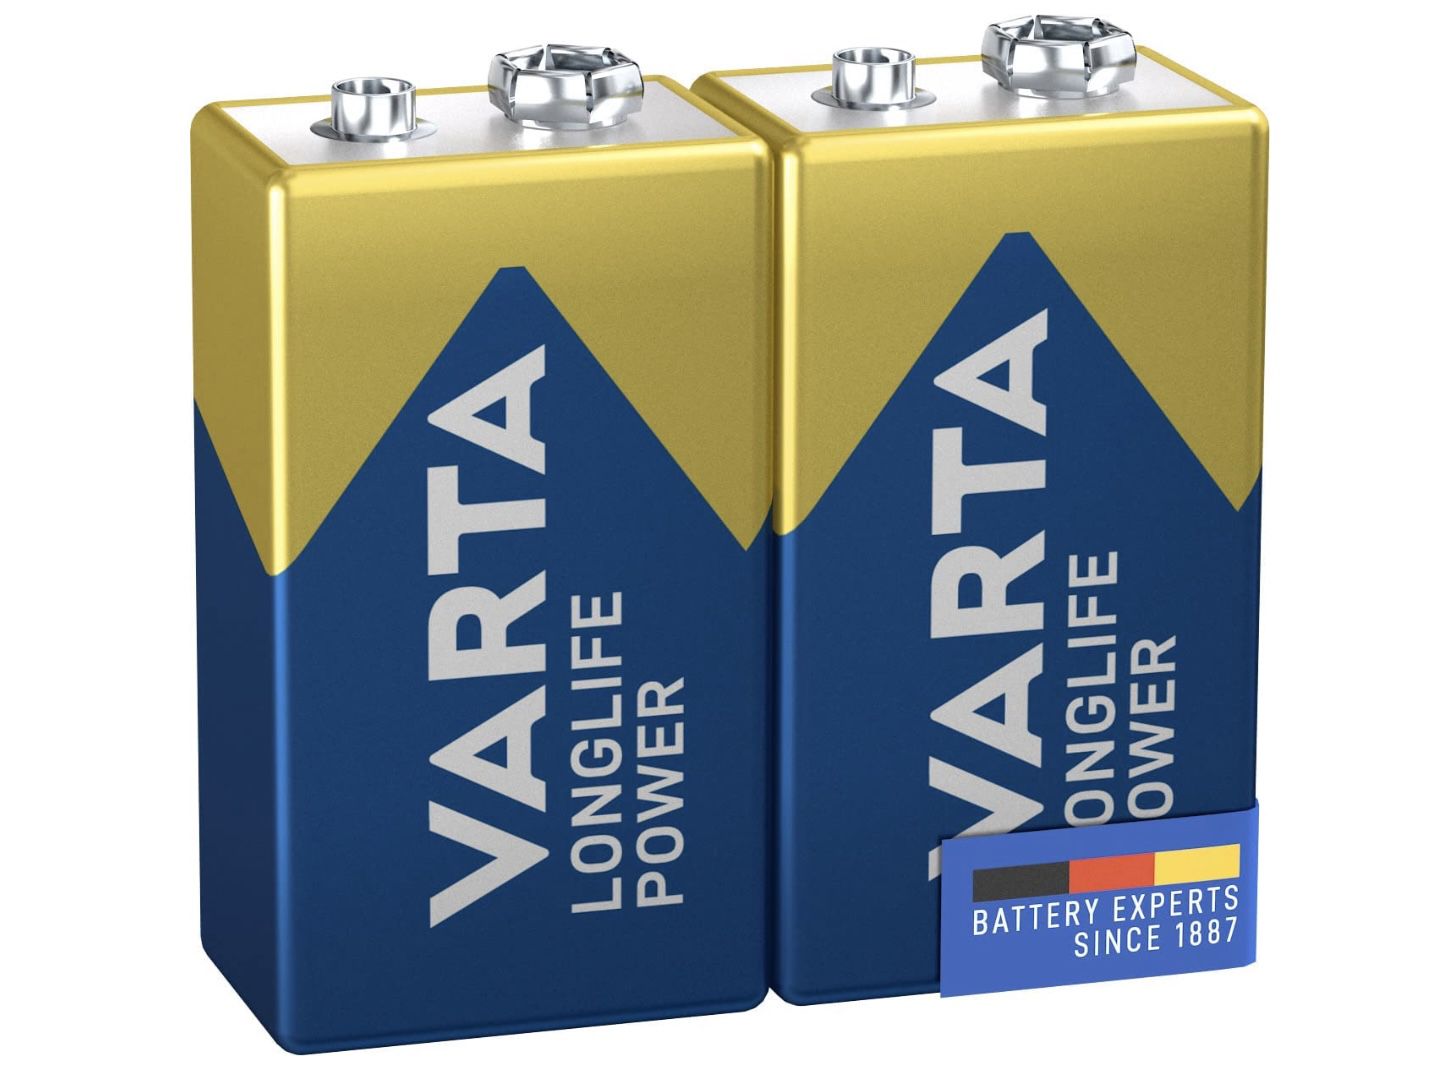 2er Pack VARTA Longlife Power 9V Block 6LR61 Batterie für 3,46€ (statt 5€)   Prime